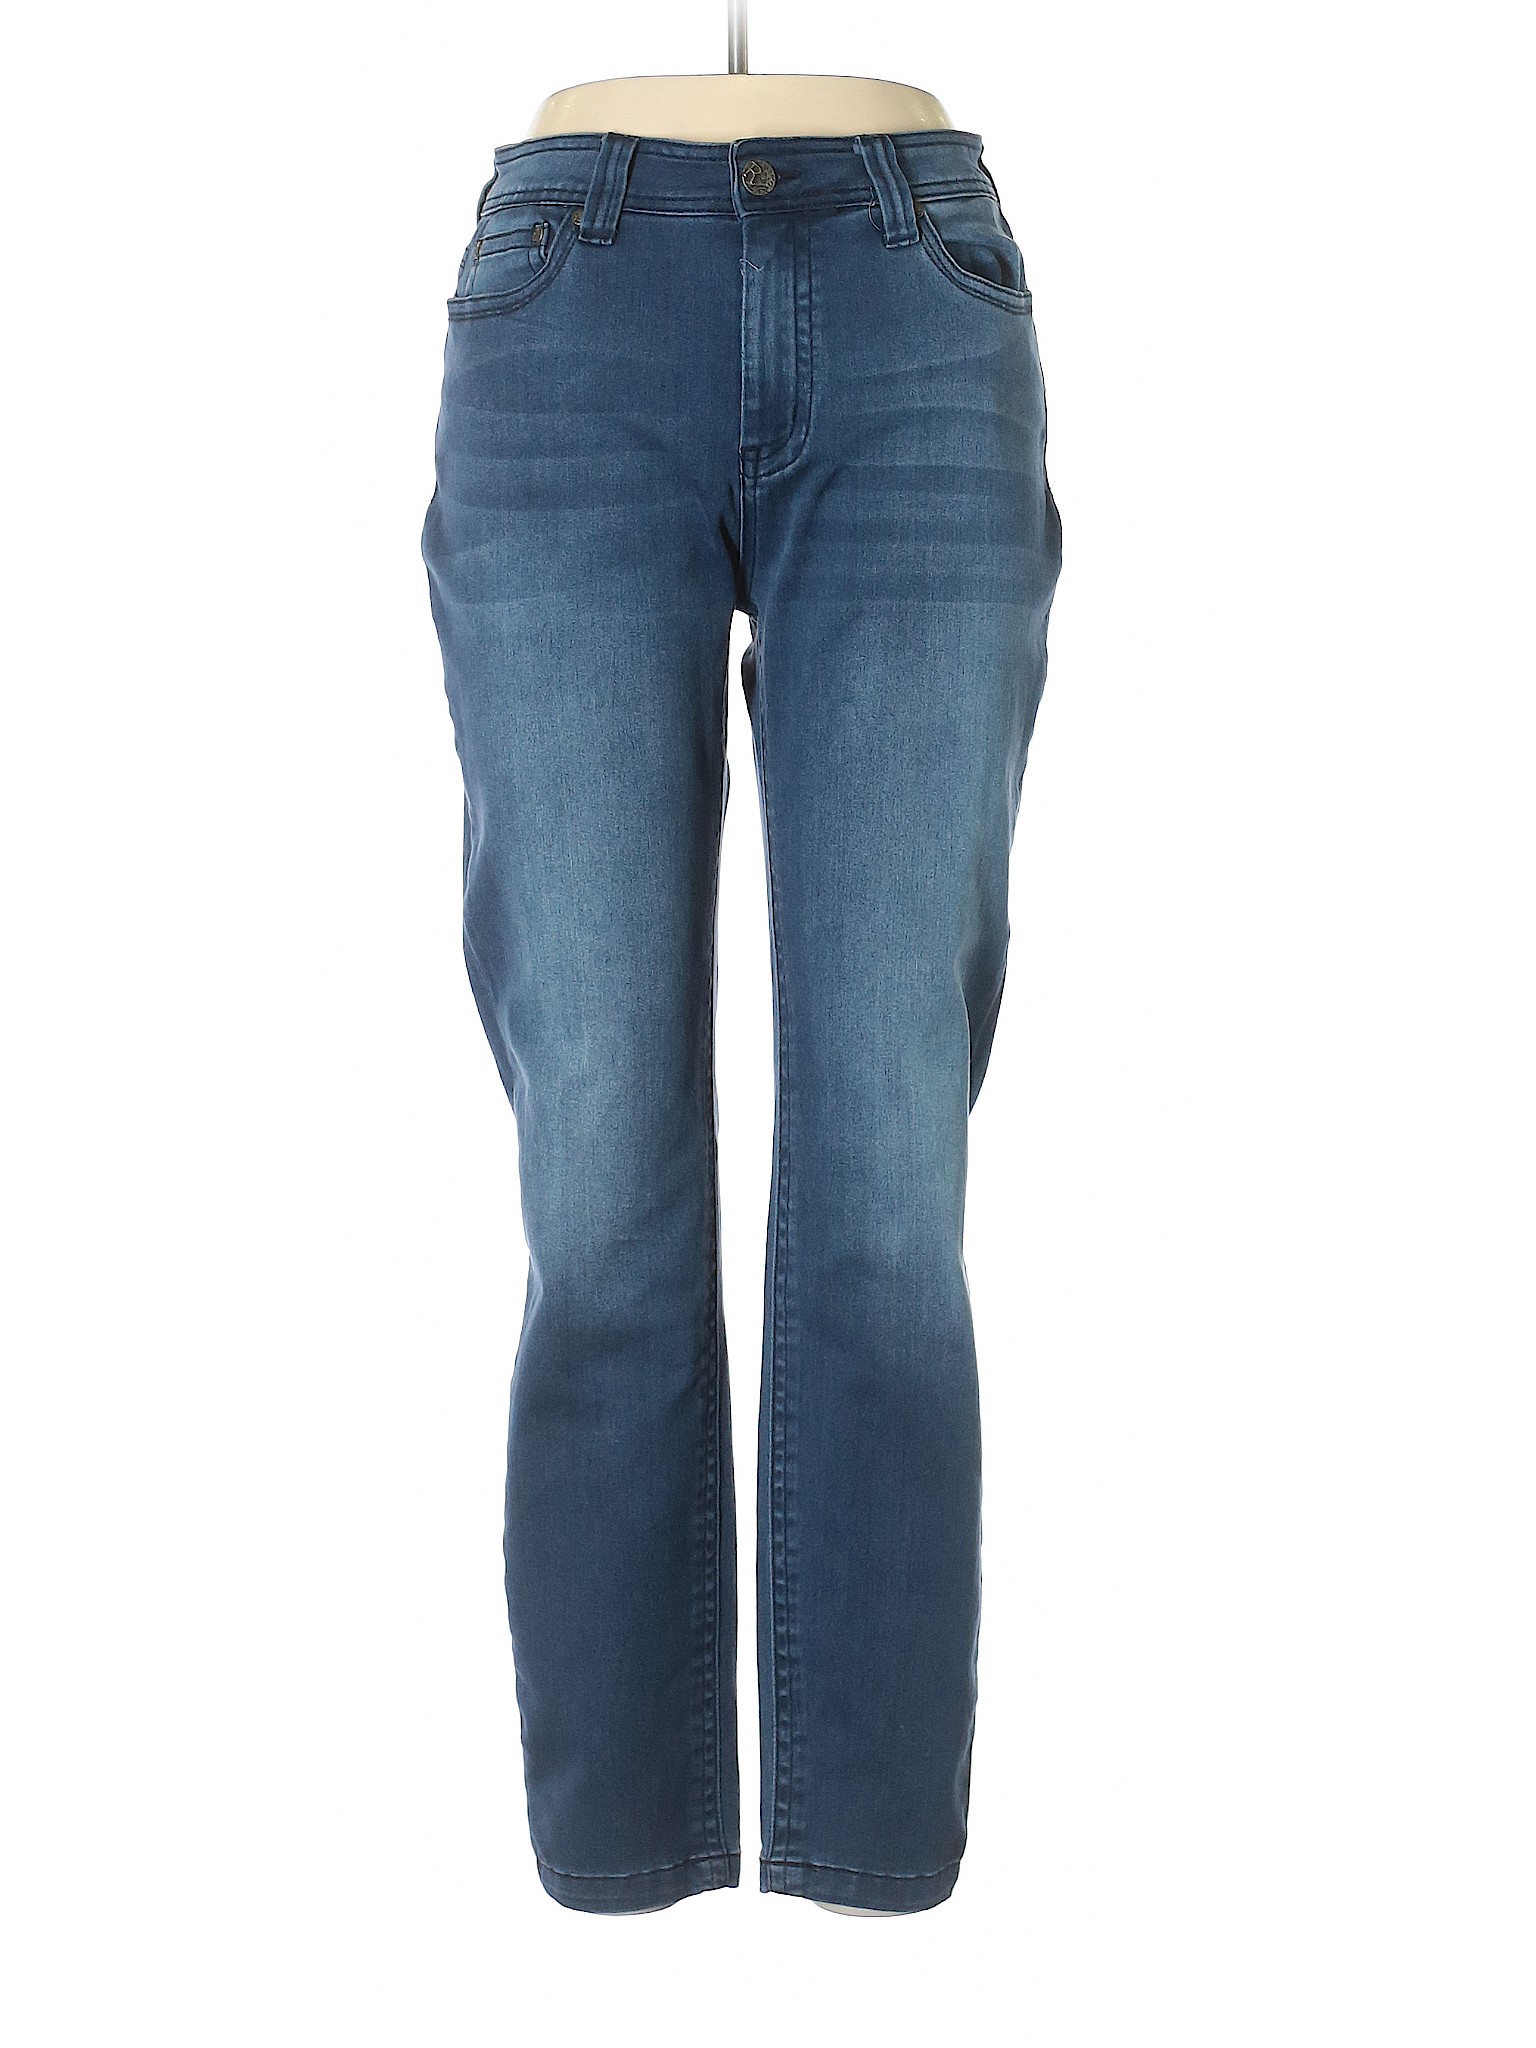 Reba Solid Blue Jeans Size 12 - 76% off | thredUP